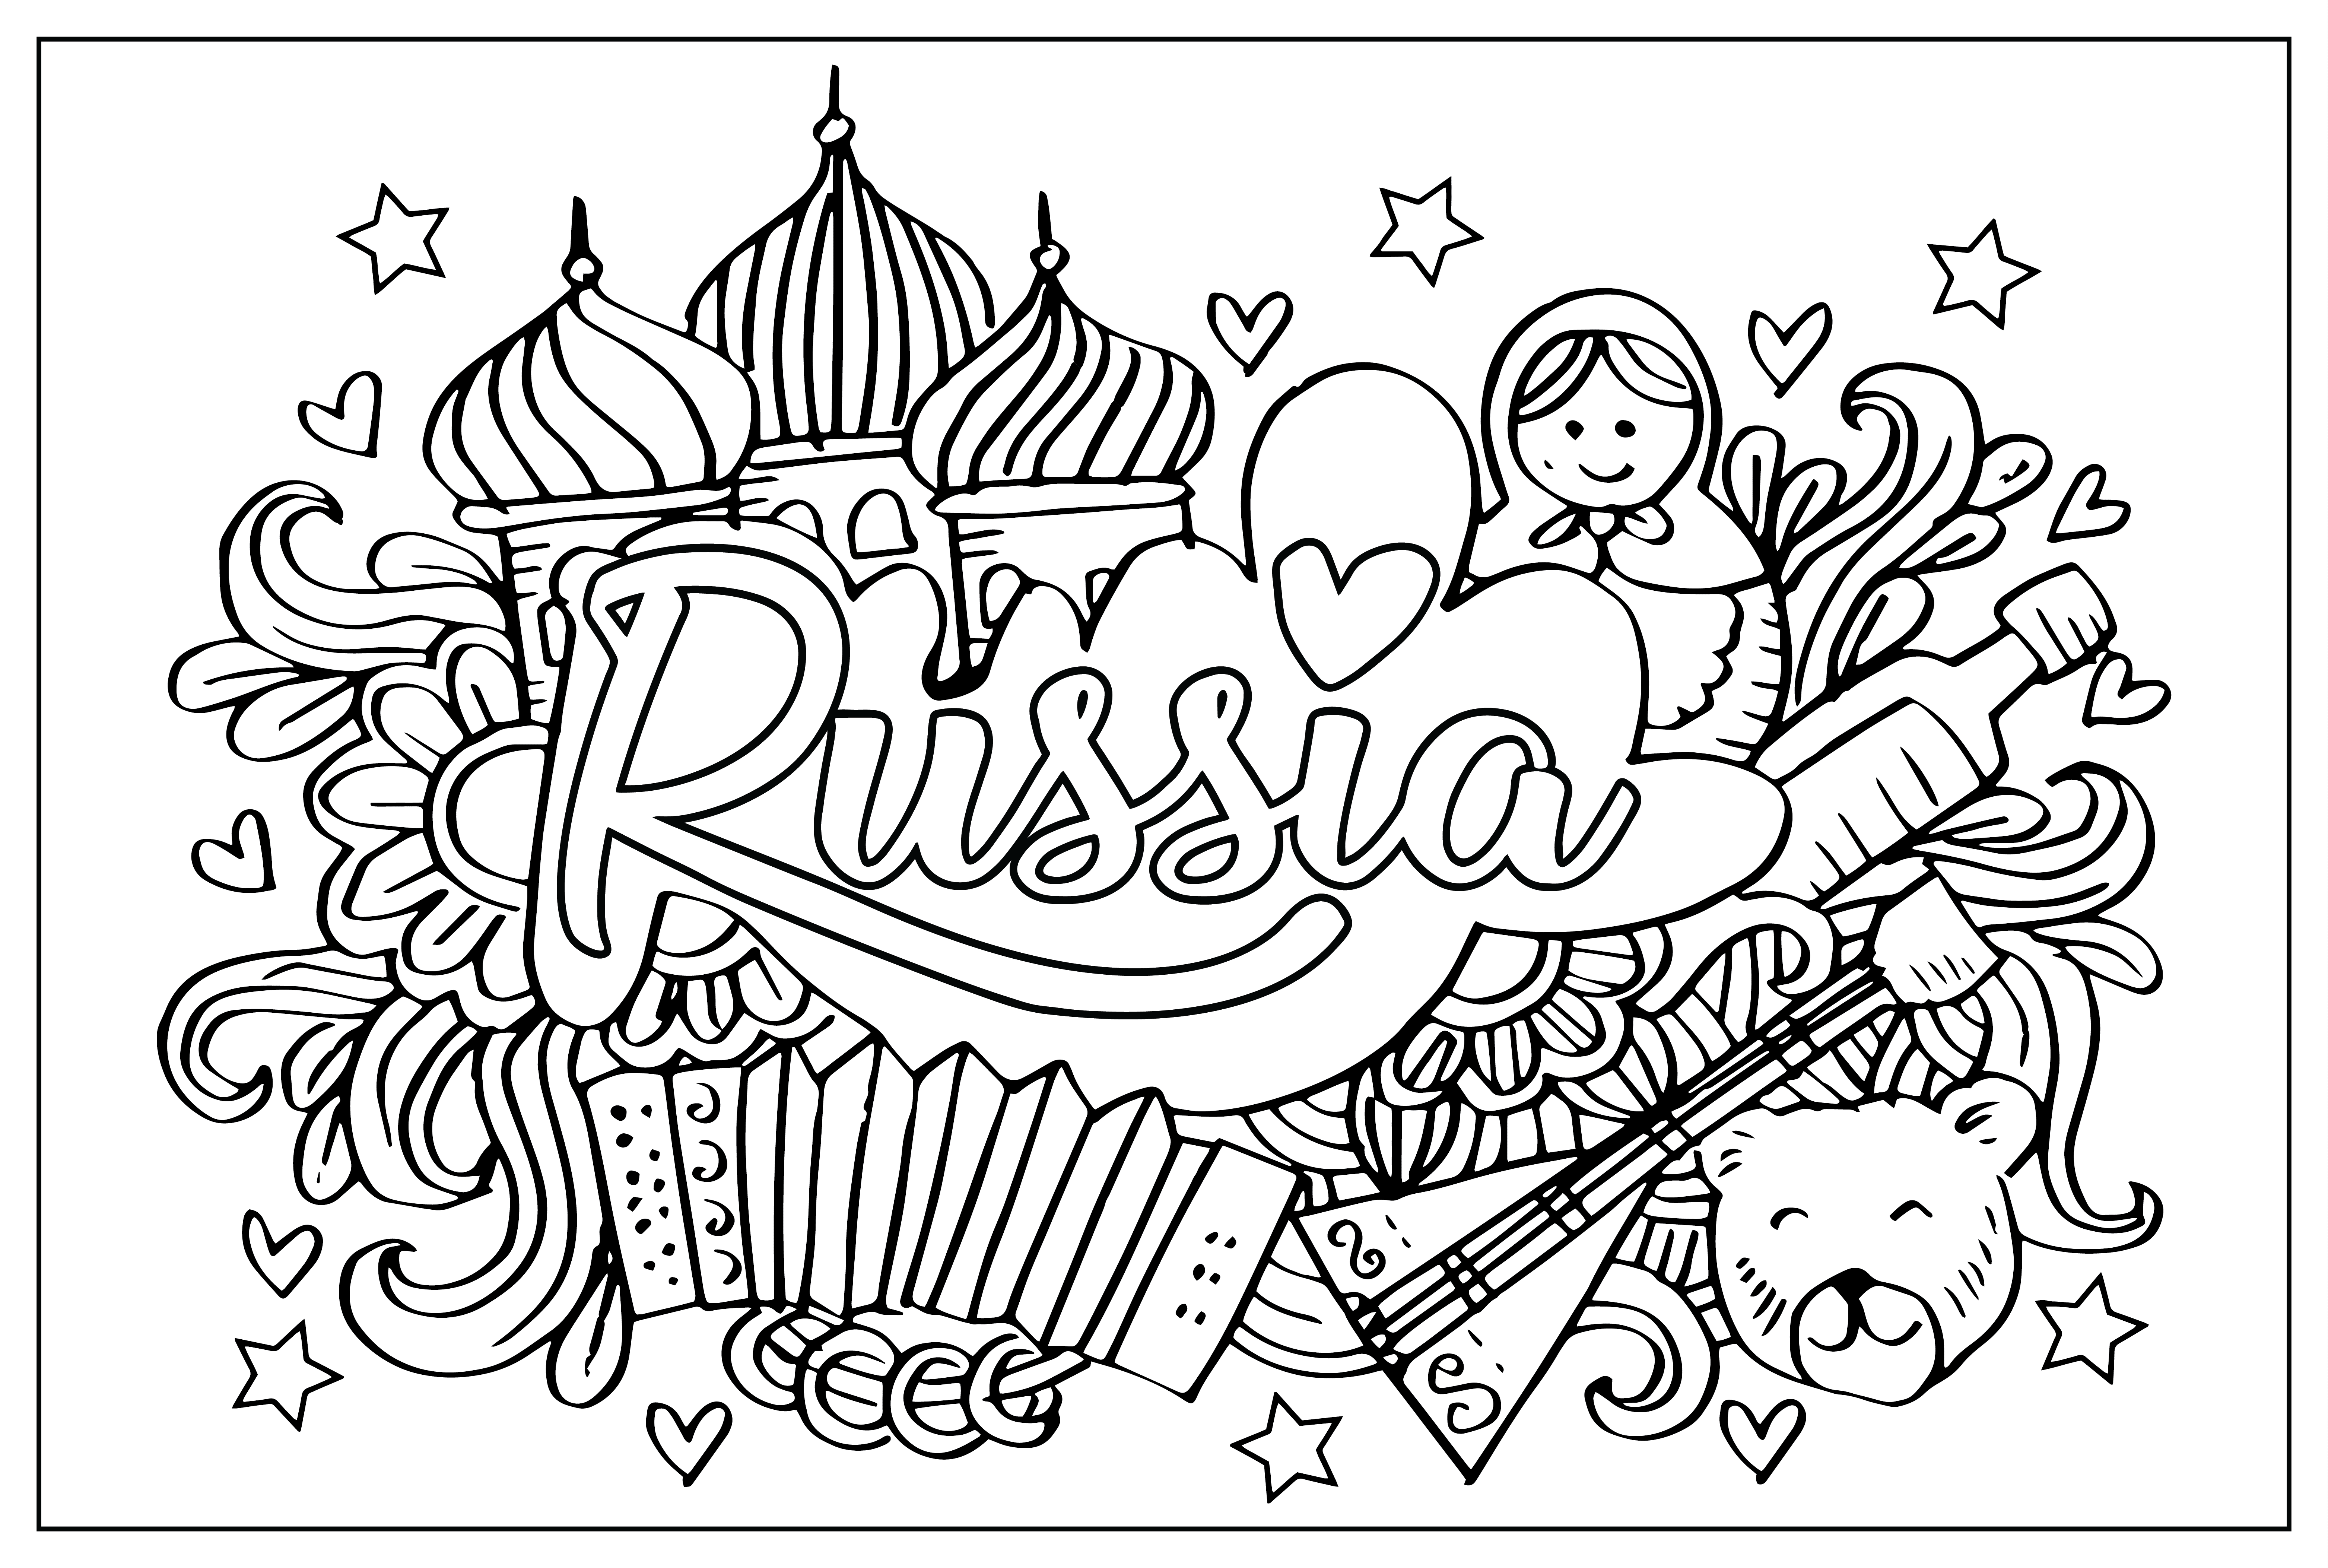 Página colorida da Rússia da Rússia